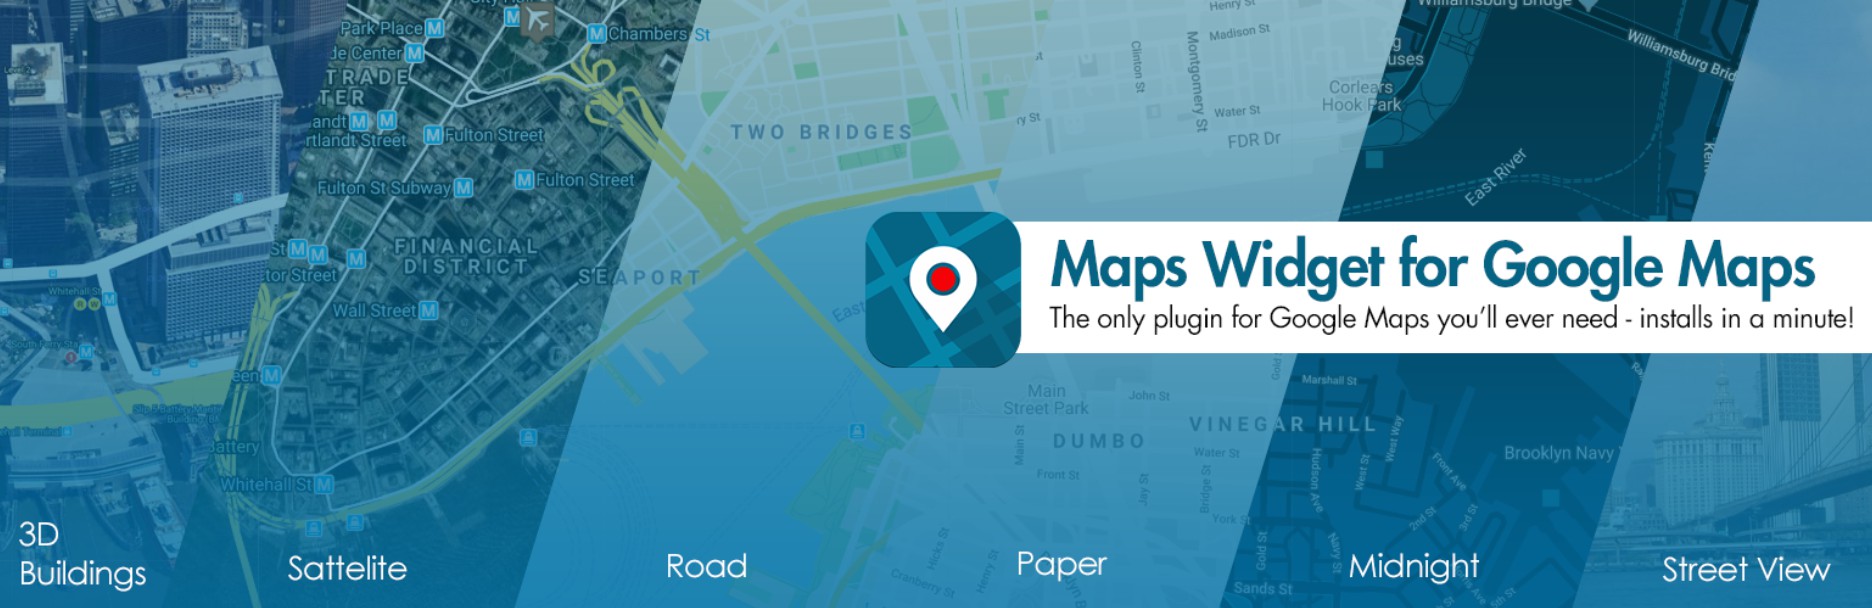 Gadget de mapas de Google Maps